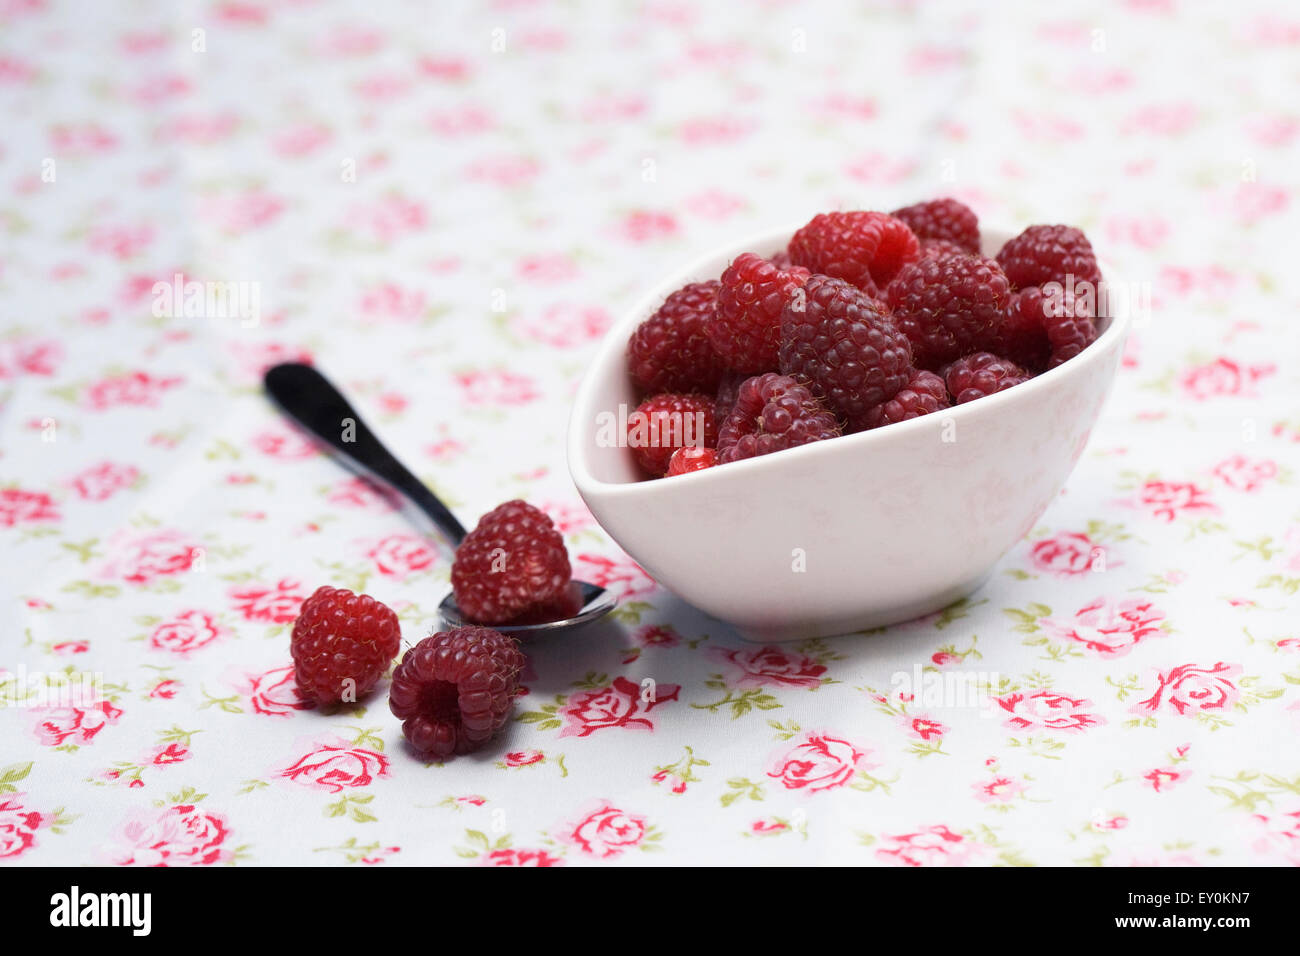 Rubus idaeus 'autunno Bliss". Appena raccolto i frutti a bacca rossa in un recipiente su un panno floreali. Foto Stock